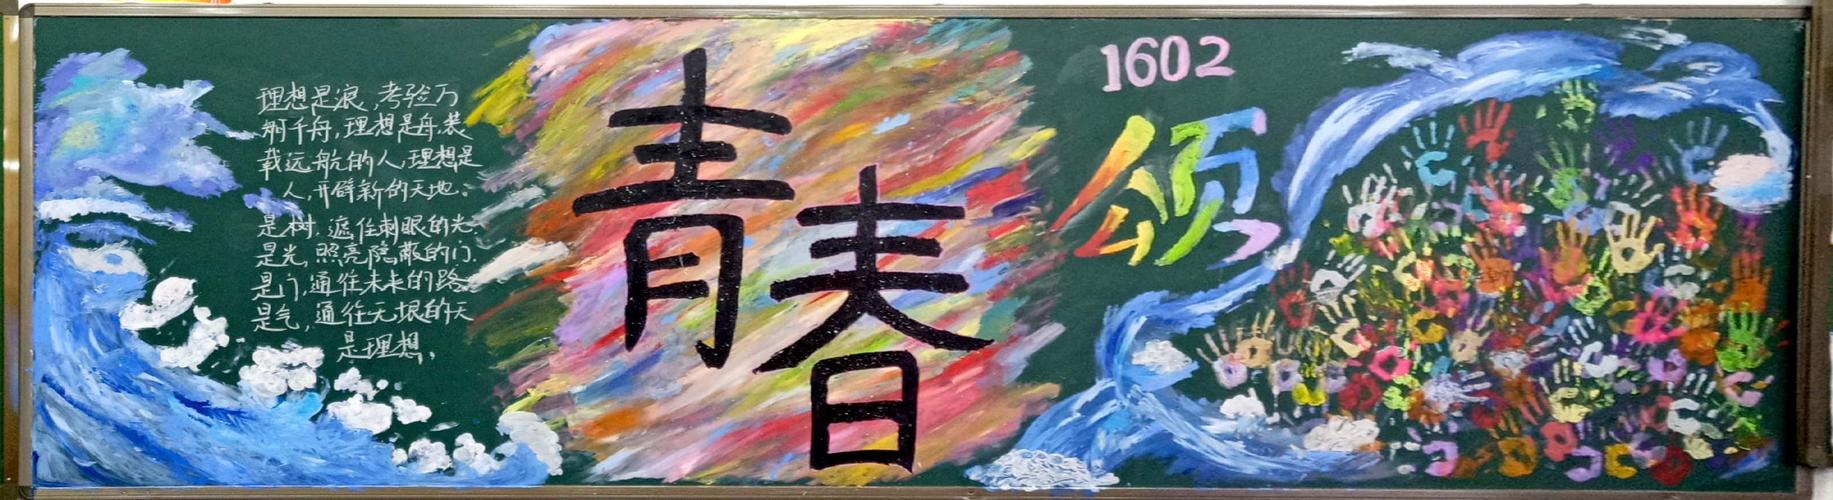 沅江市玉潭学校初中部2019上期第一学月黑板报评比(总第6期)